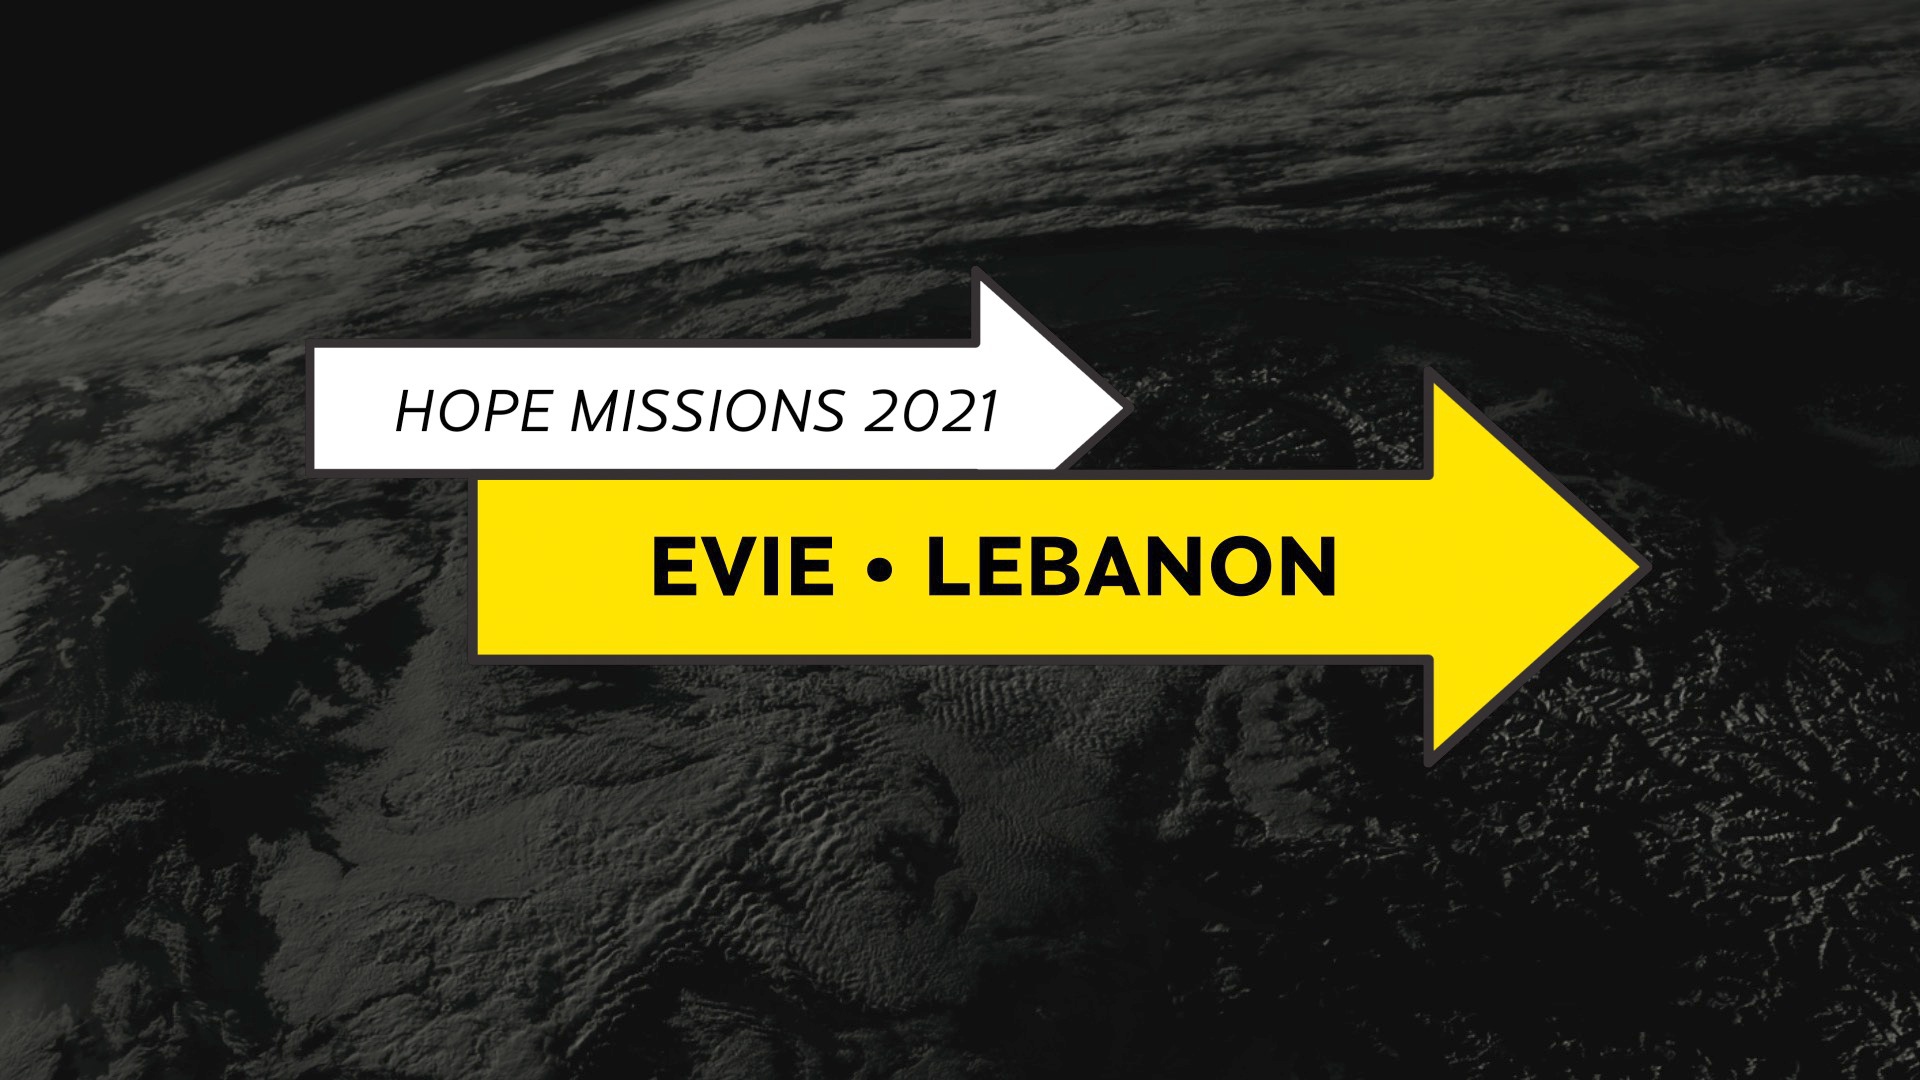 Evie - Lebanon Click Through